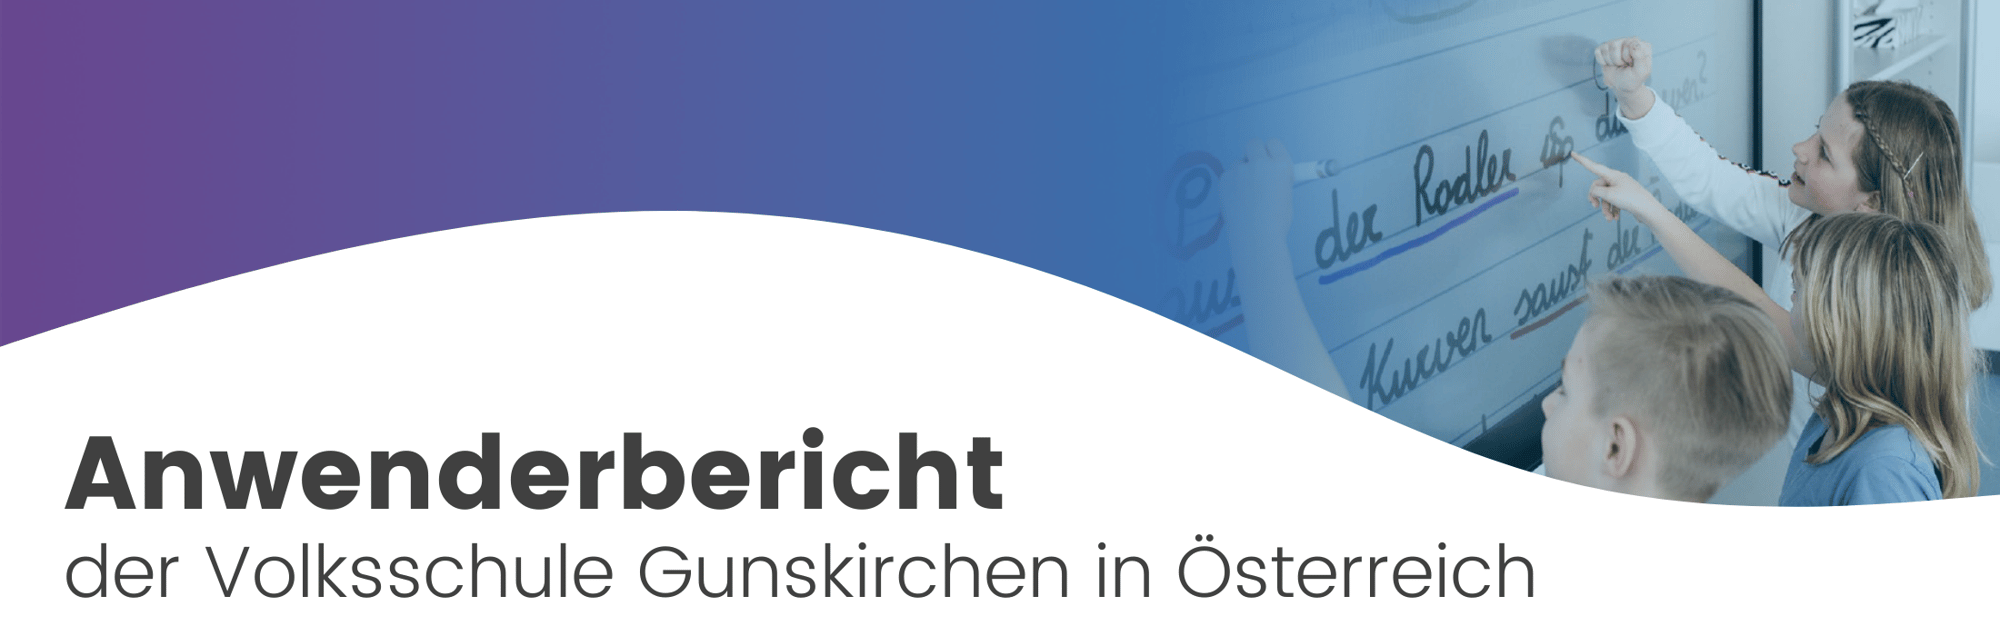 DACH_Header_CaseStudy_Gunskirchen